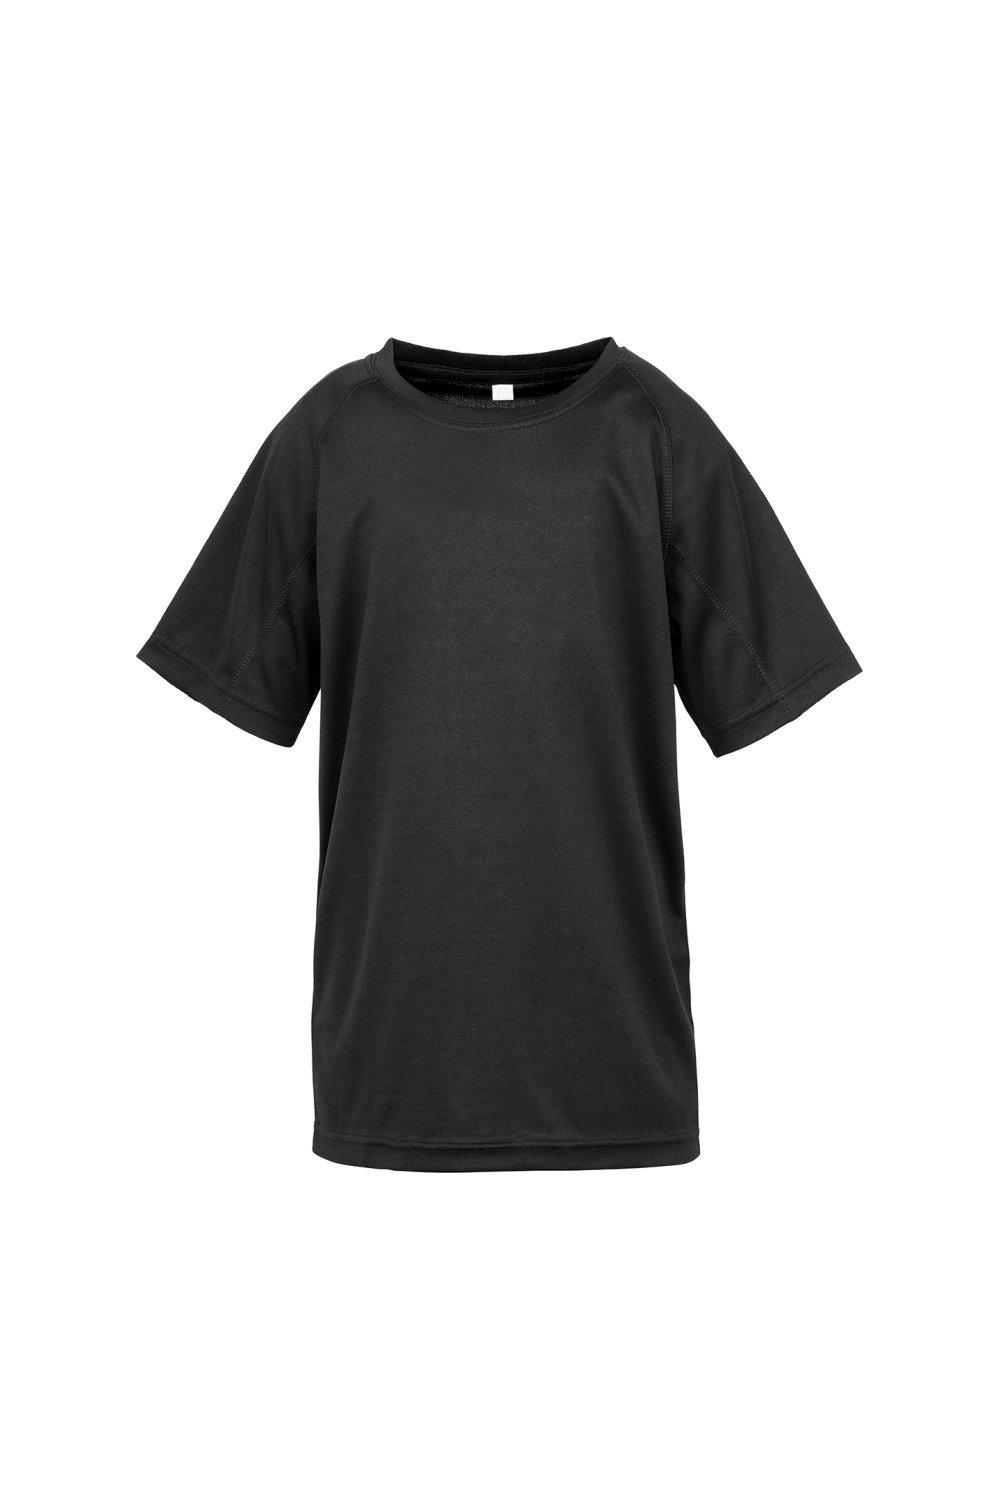 Детская футболка Impact Performance Aircool Spiro, черный женская футболка с коротким рукавом быстросохнущая дышащая облегающая футболка для гольфа